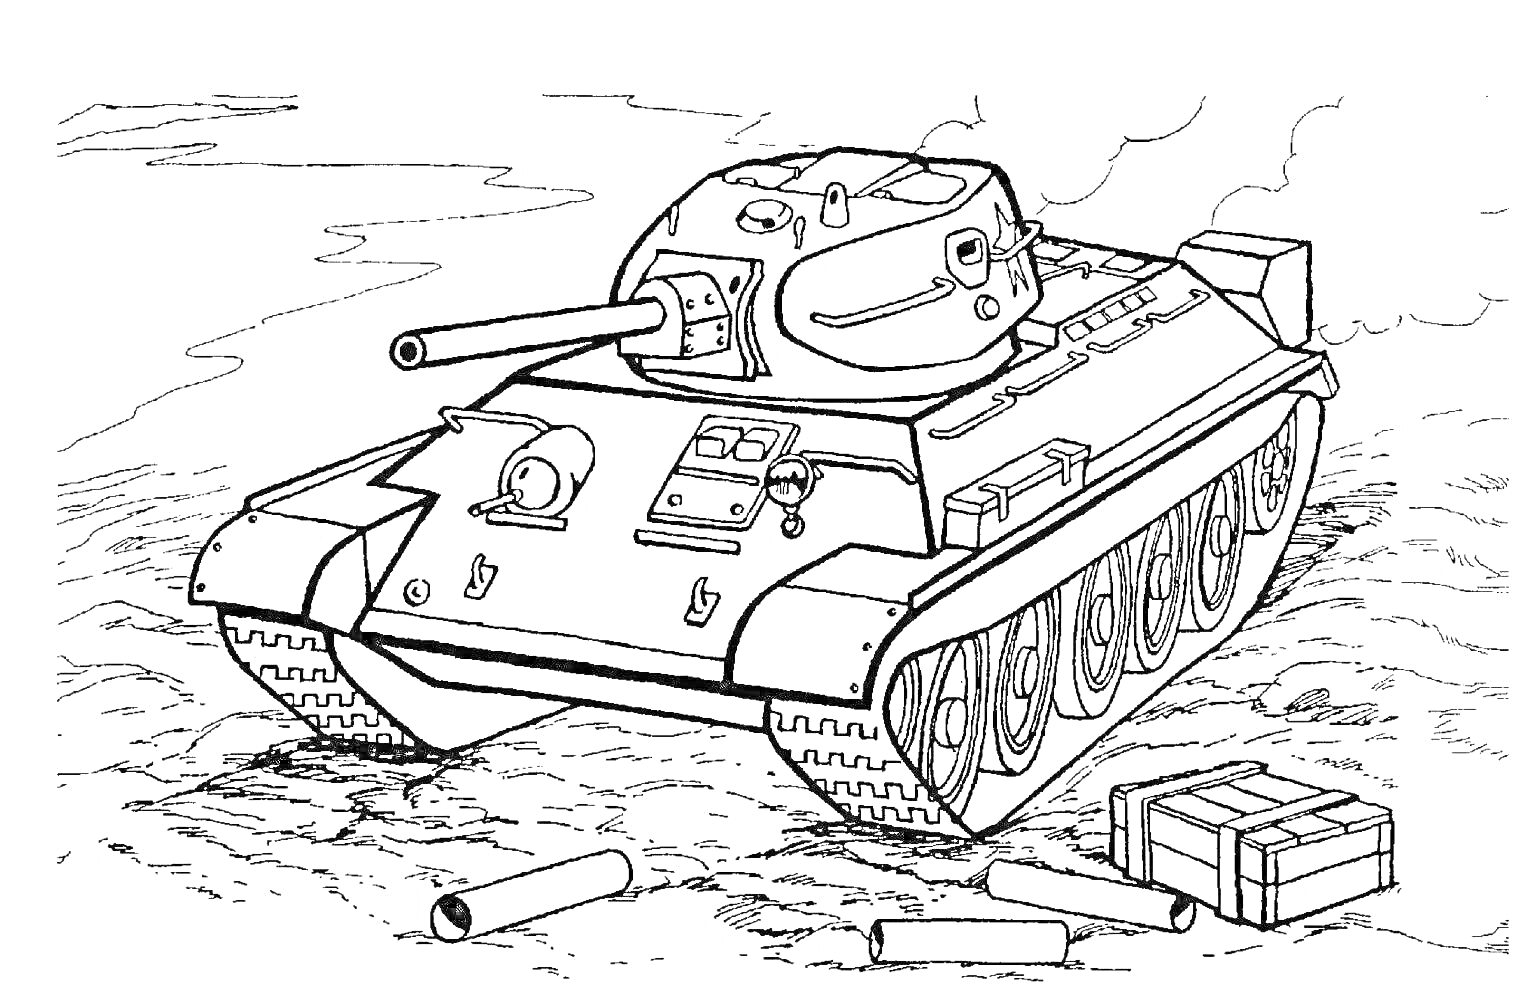 Раскраска Раскраска с танком Т-34 на поле боя, на земле валяются снаряды и ящики